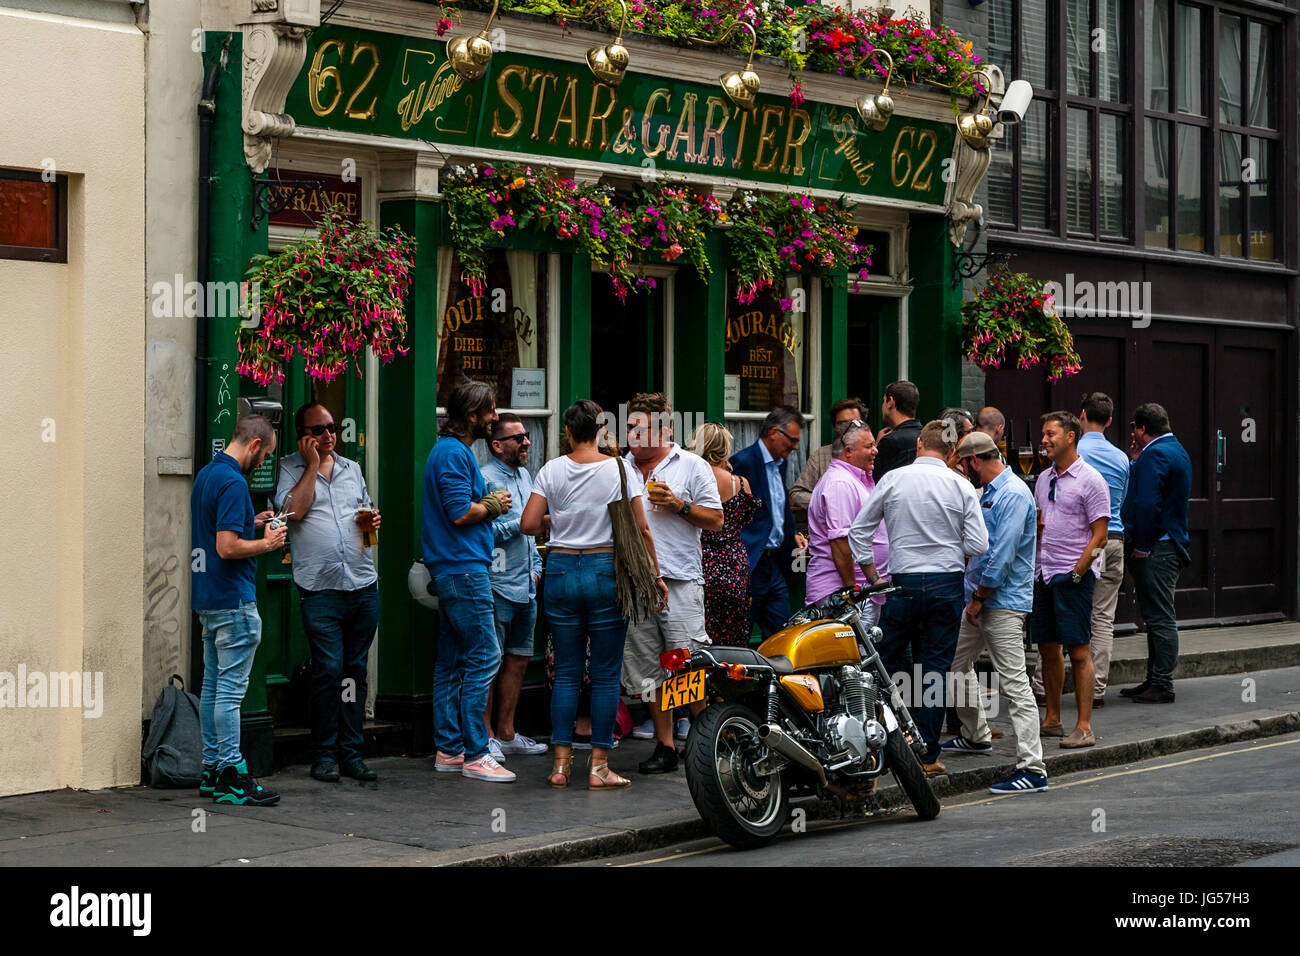 Un grand groupe de personnes de boire en dehors de la Star et porte-jarretelles, Pologne Pub Street, London, UK Banque D'Images